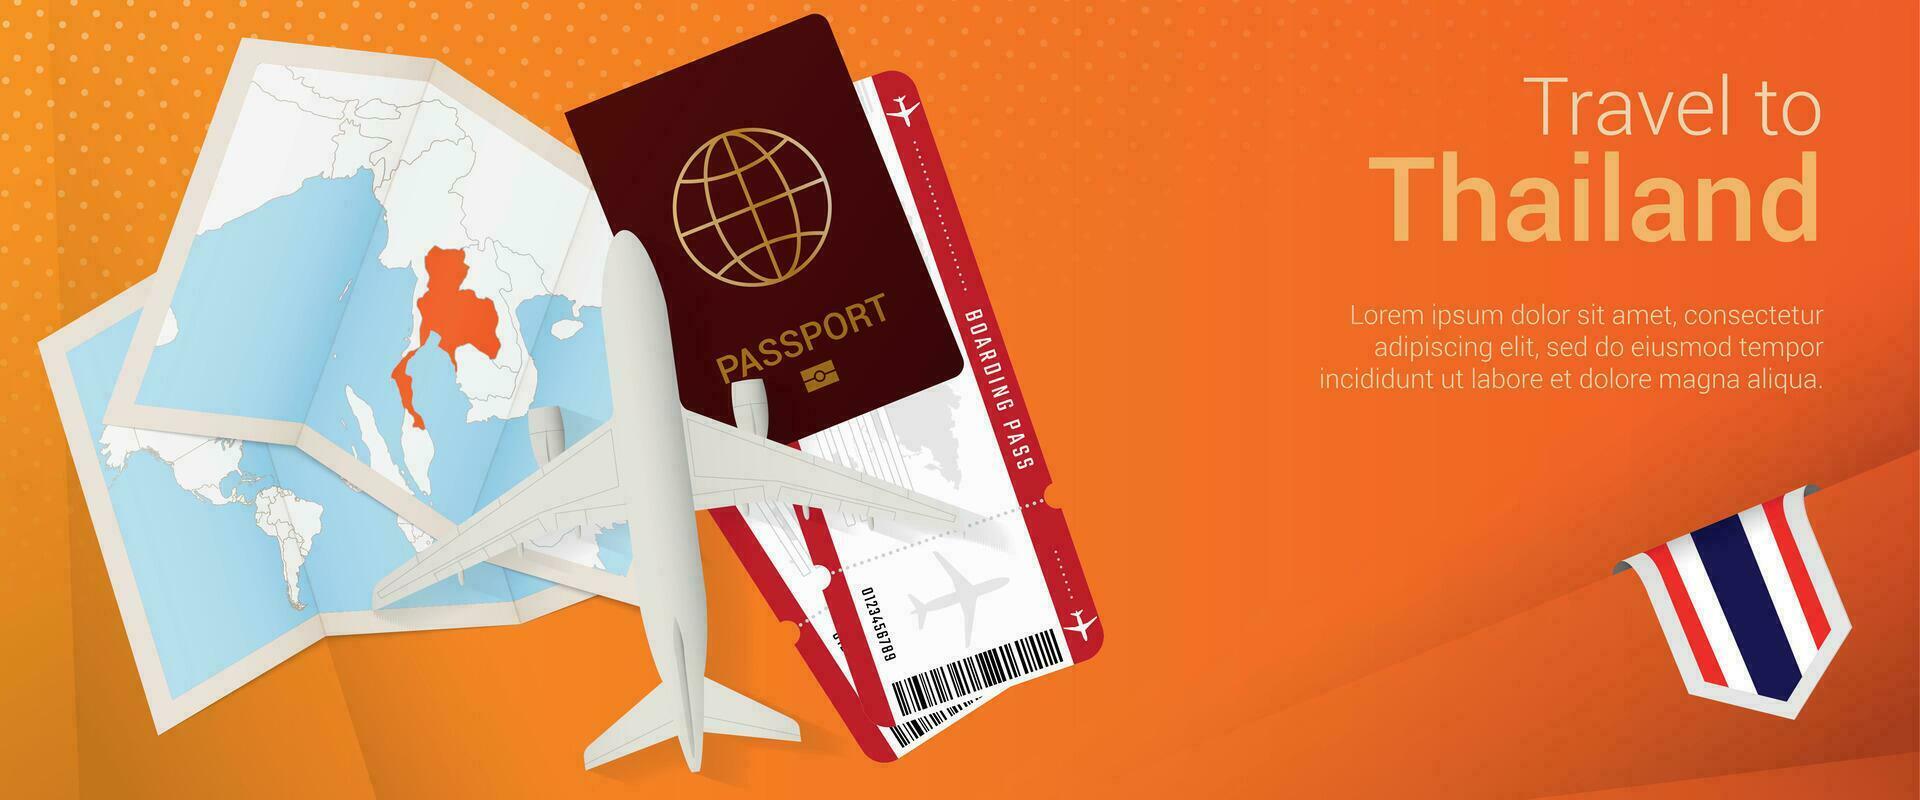 Reise zu Thailand Pop-under Banner. Ausflug Banner mit Reisepass, Eintrittskarten, Flugzeug, Einsteigen passieren, Karte und Flagge von Thailand. vektor